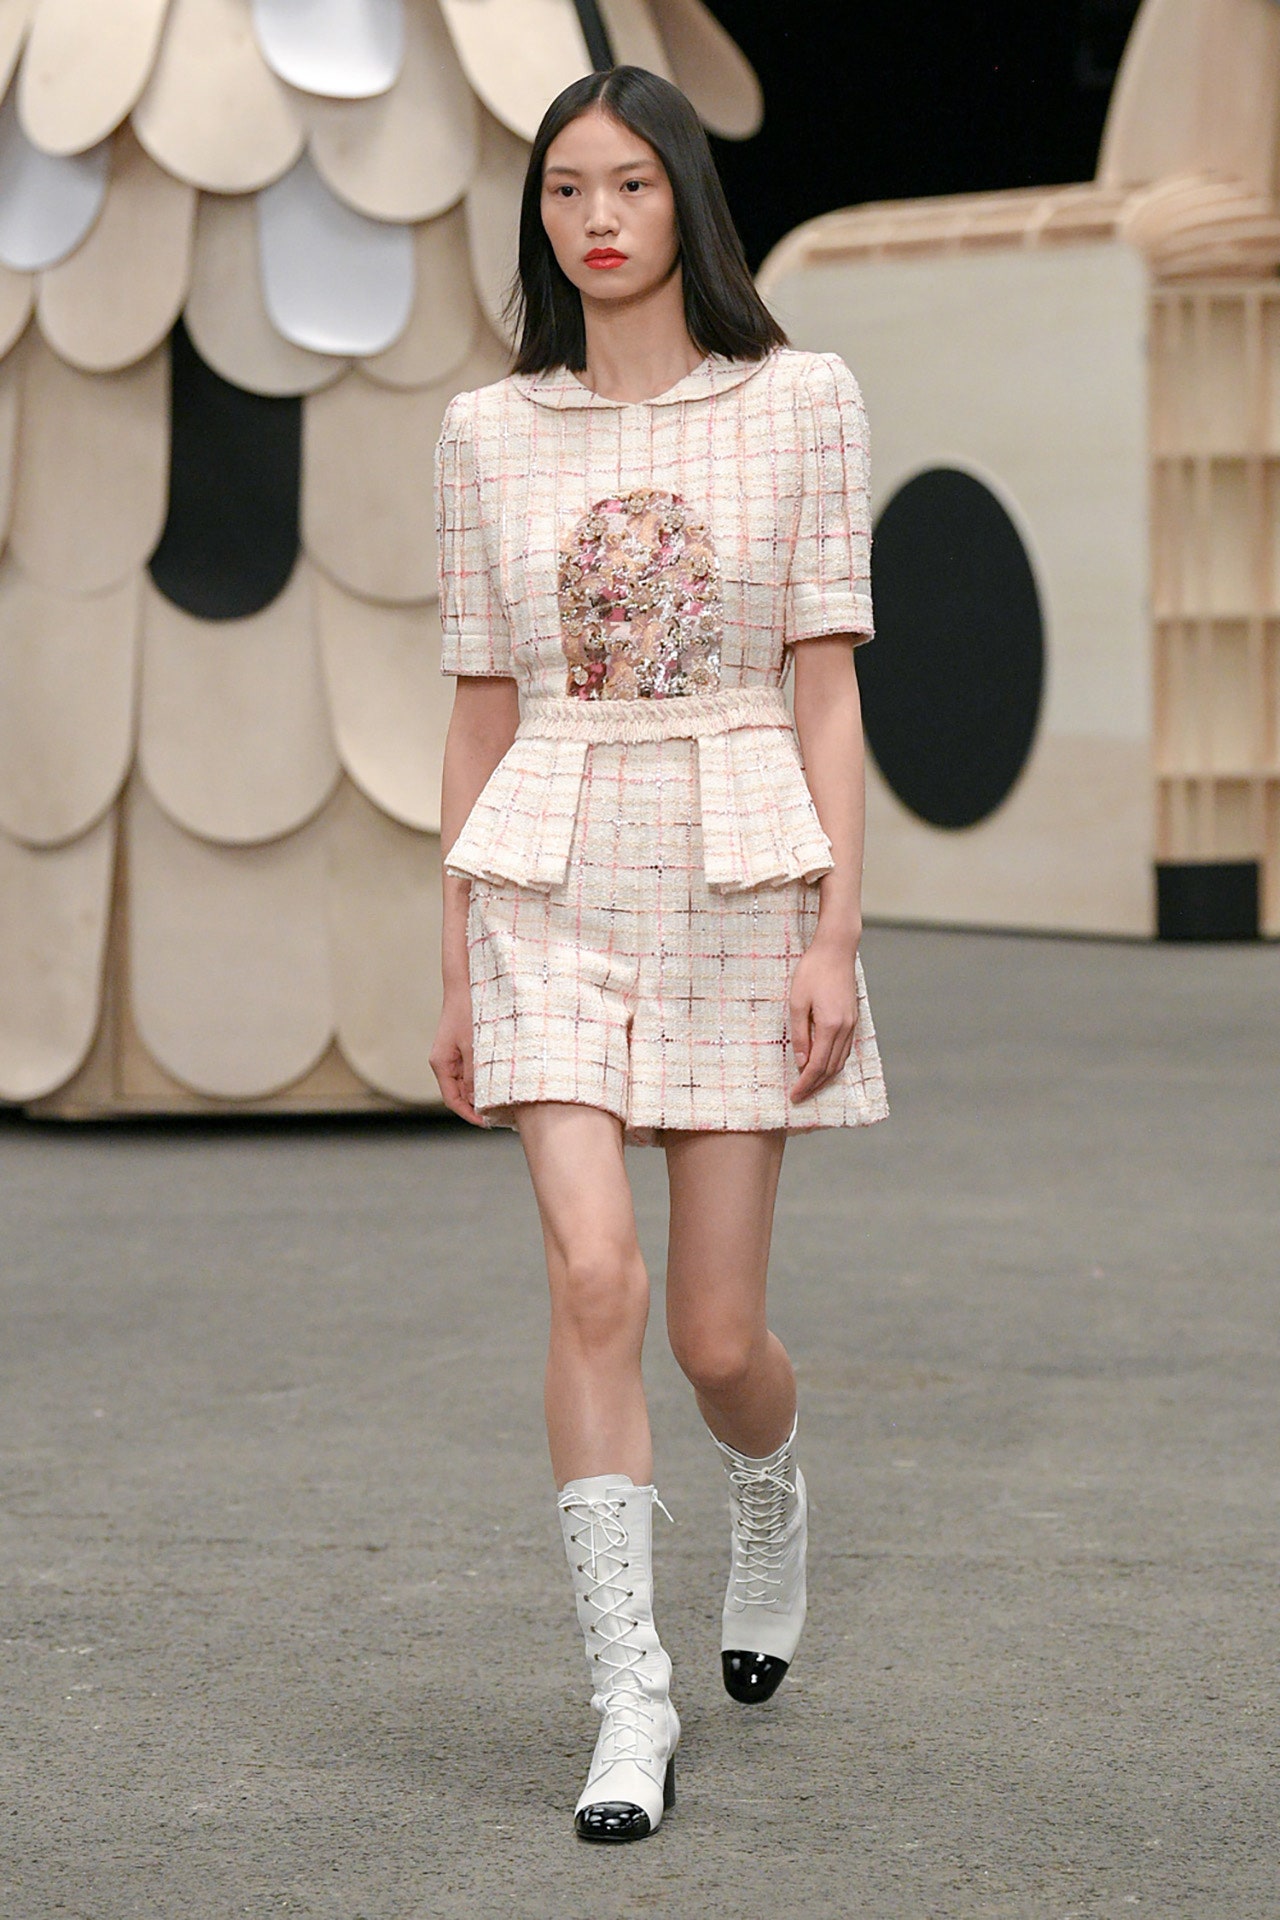 Chanel, en son Paris Couture Week koleksiyonuyla kendine güvenen stile saygı duruşunda bulunuyor